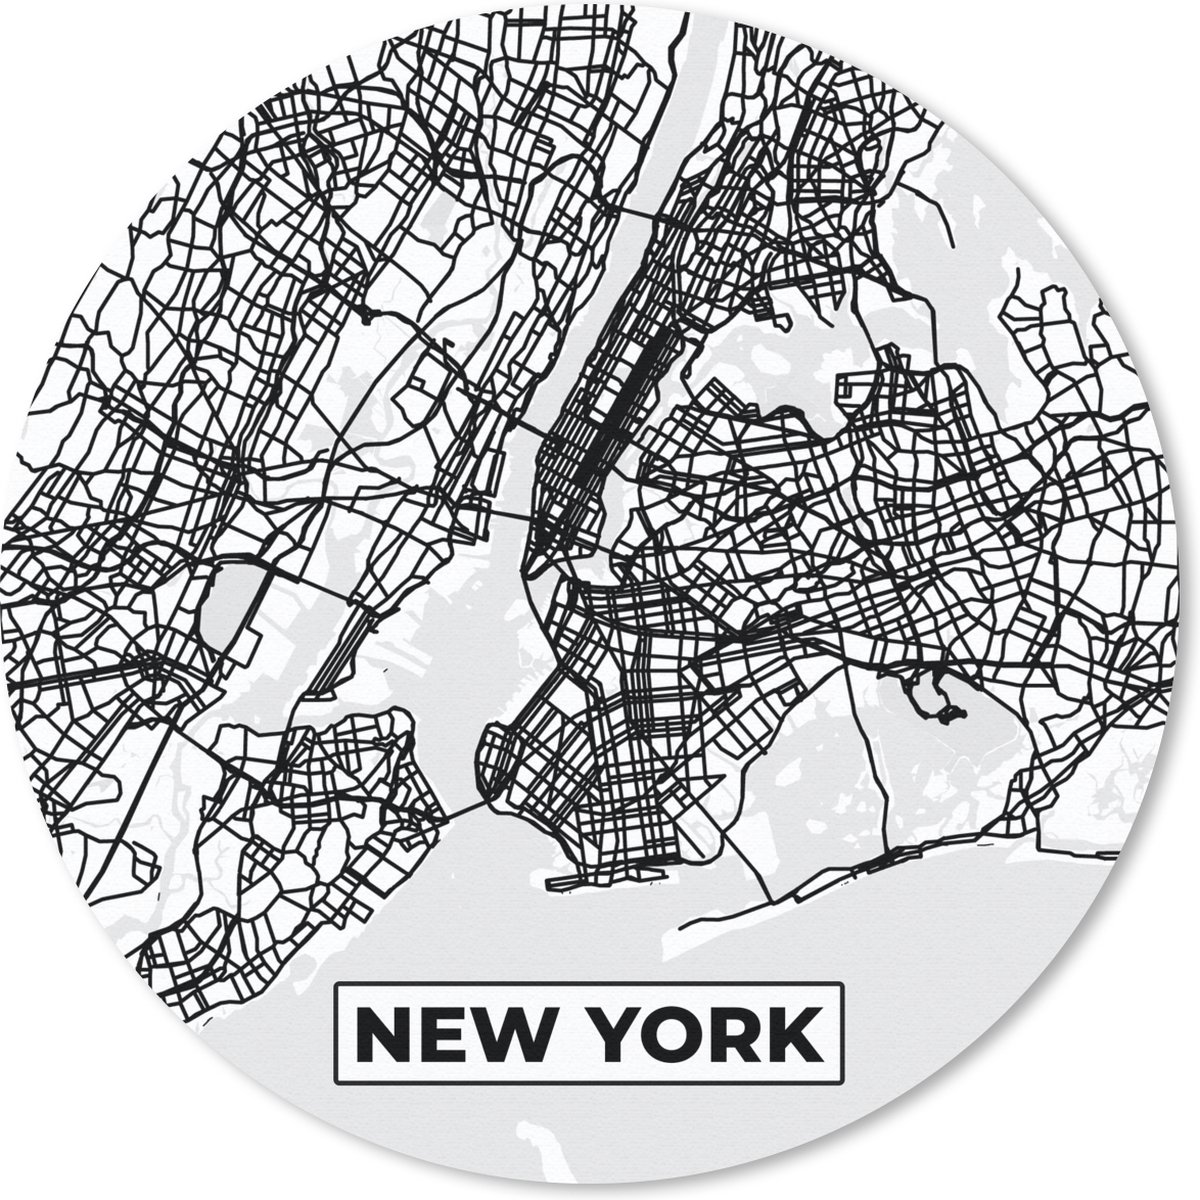 Muismat - Mousepad - Rond - Stadskaart - Plattegrond - New York - Kaart - Zwart Wit - 50x50 cm - Ronde muismat